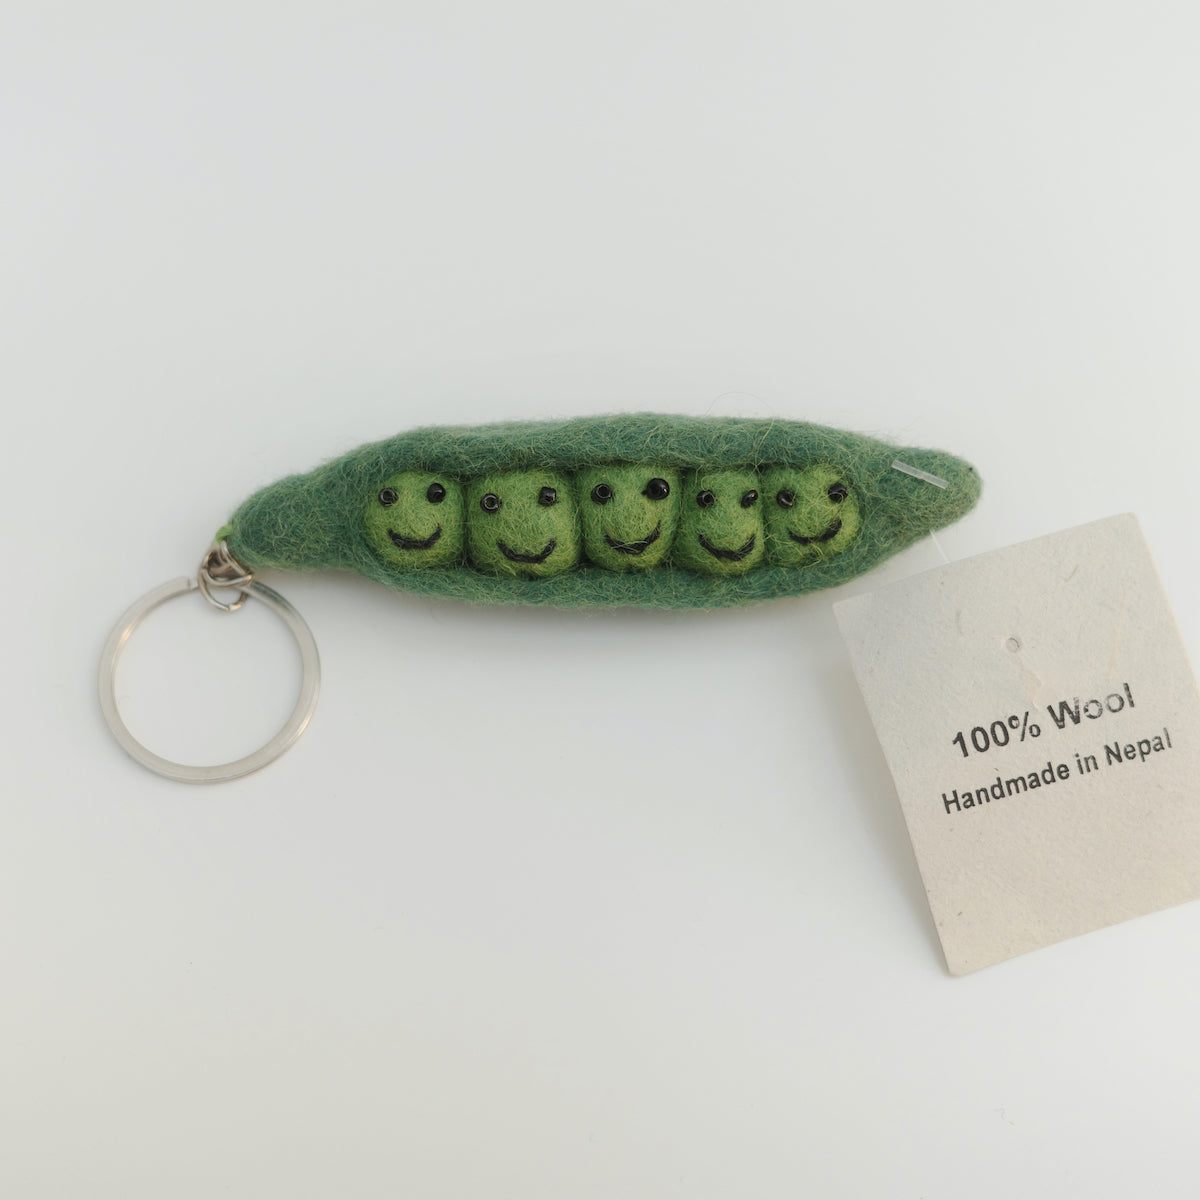 Handmade Felt Vegetable Keychain (Each One Will Vary)